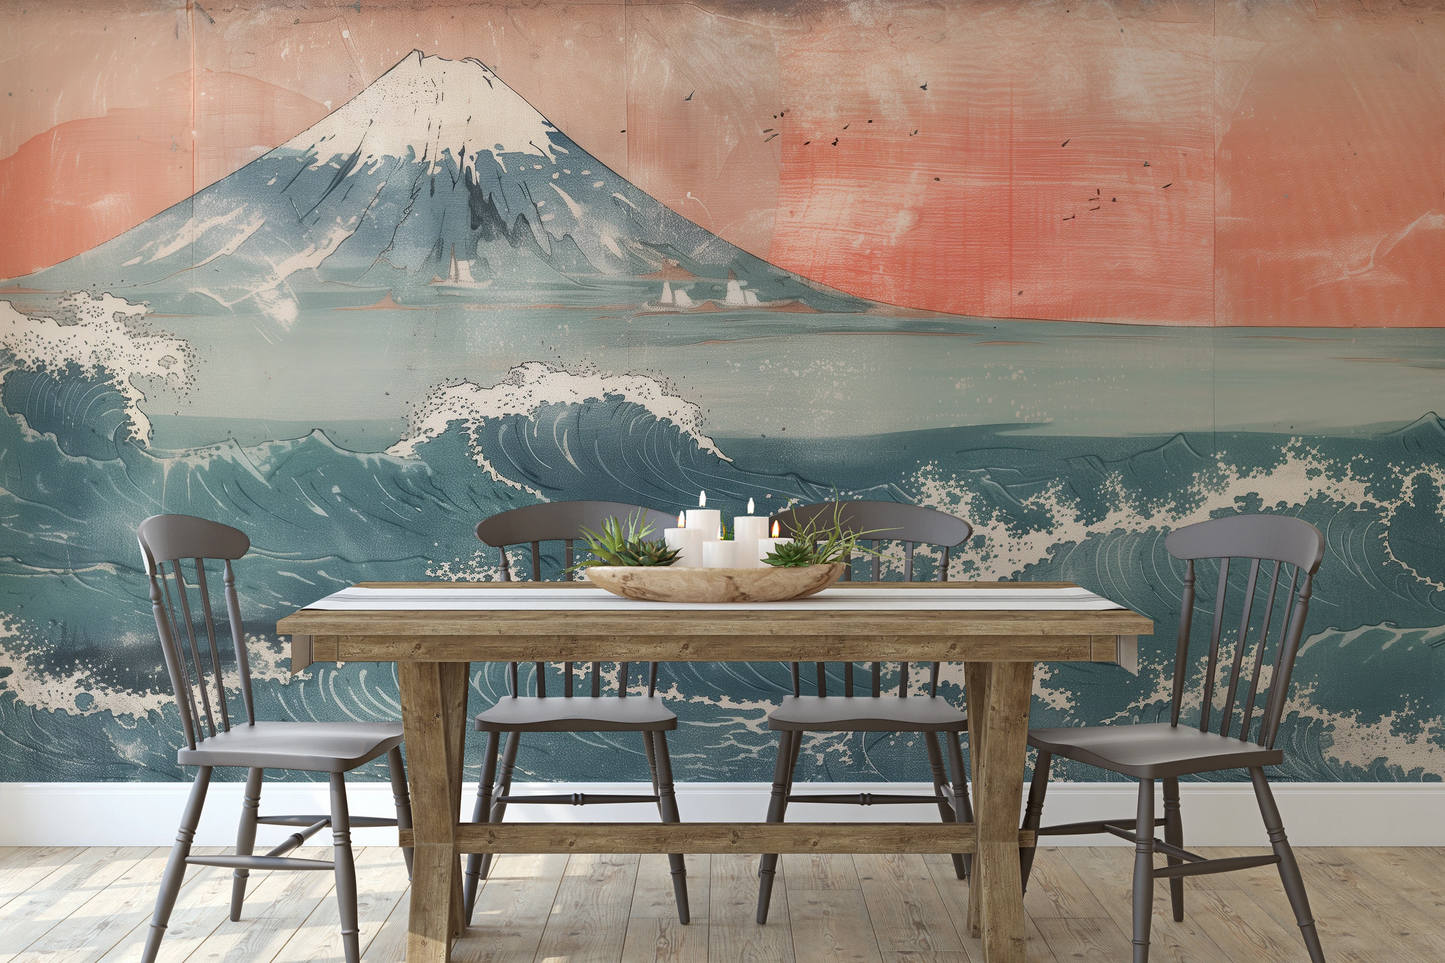 Fototapeta malowana o nazwie Fuji's Serenity pokazana w aranżacji wnętrza.